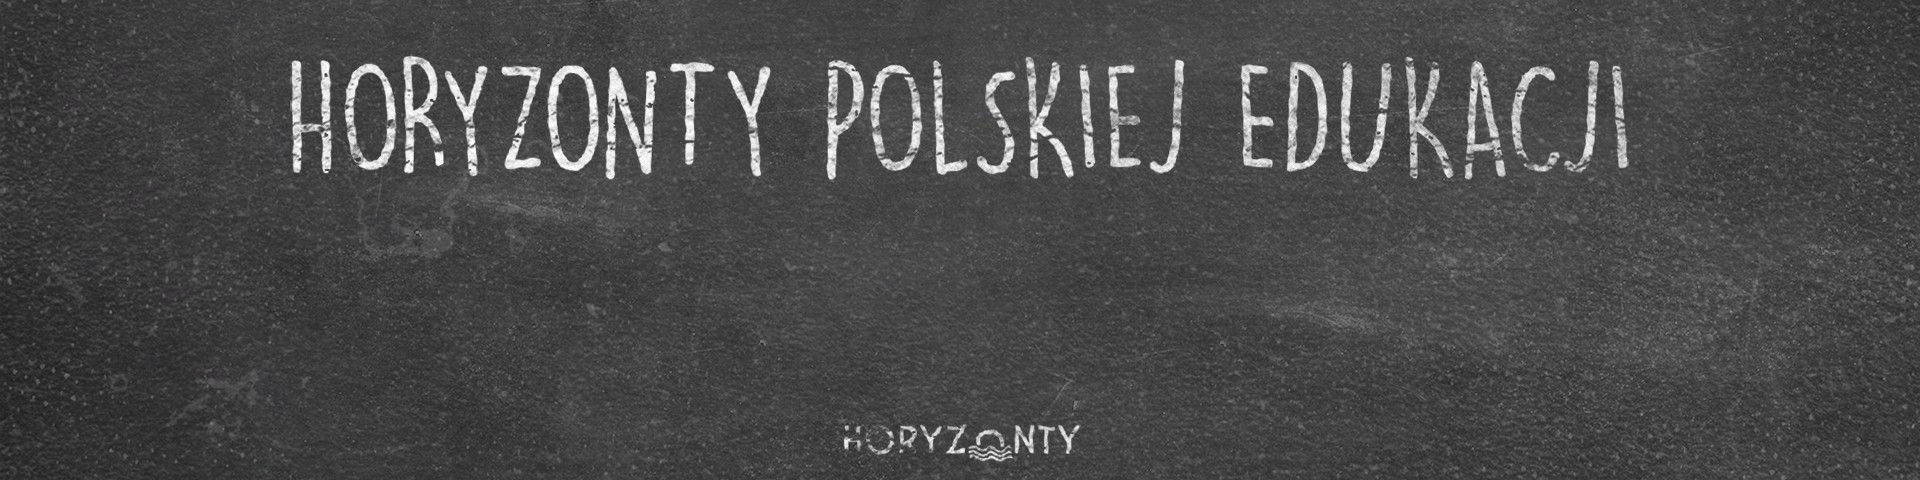 Horyzonty polskiej edukacji – te same błędy